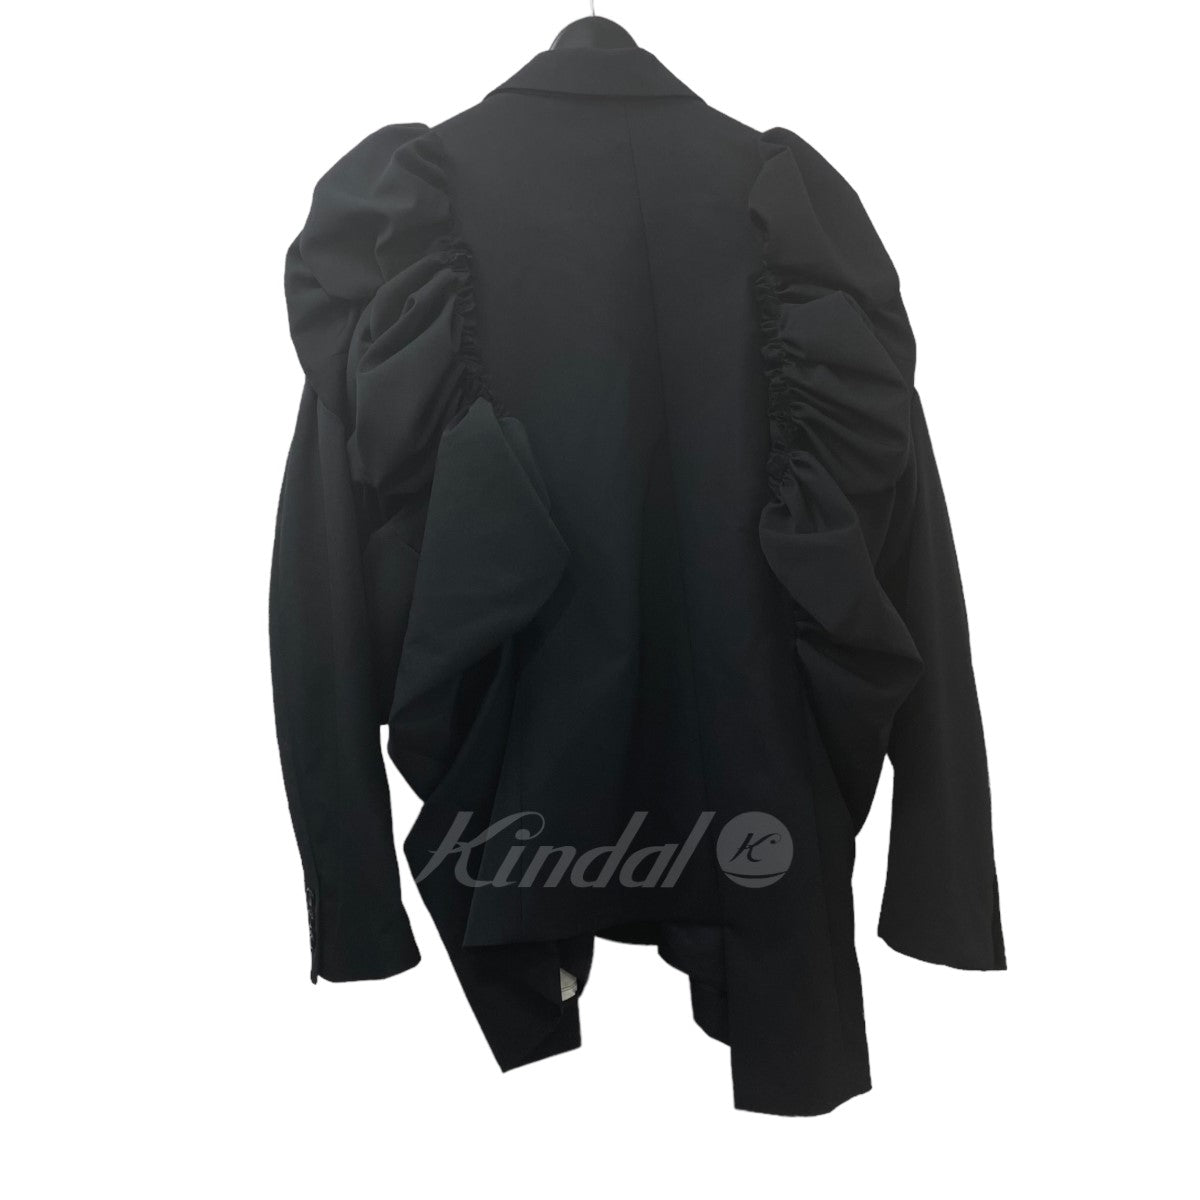 COMME des GARCONS(コムデギャルソン) 23SS Asynmetrical Jacket アシンメトリージャケット【値下げ】